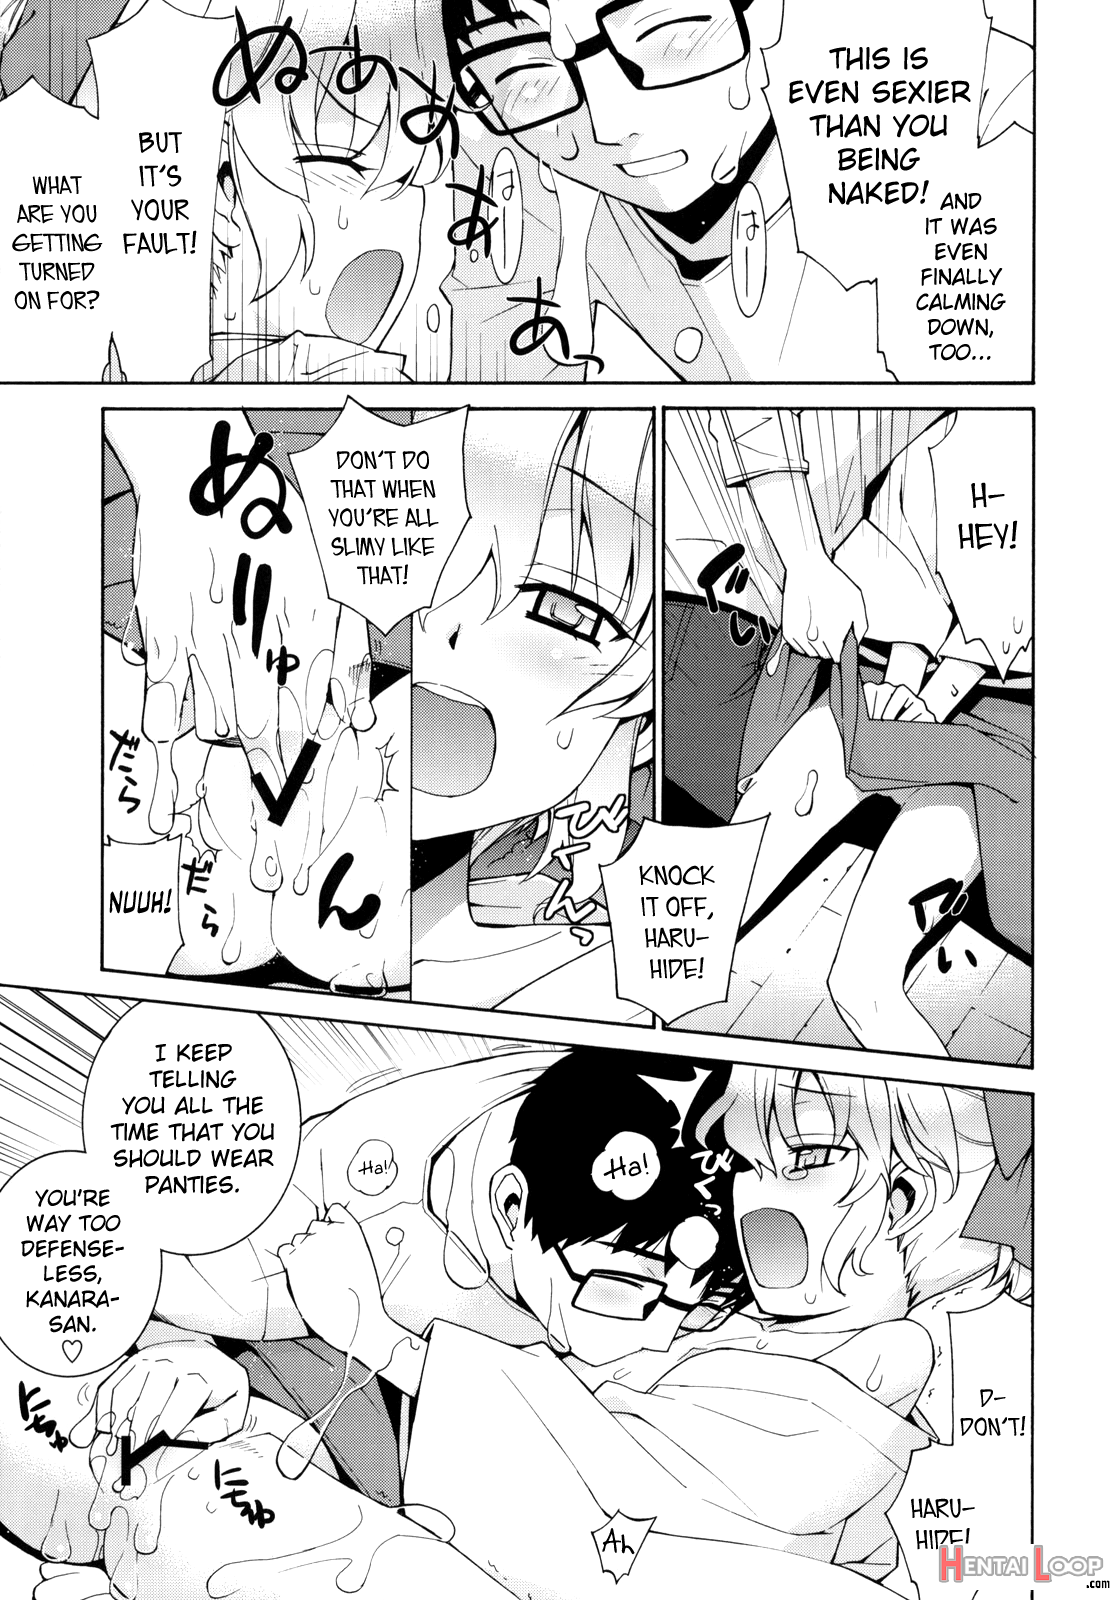 Kanara-sama No Nichijou 2 page 6